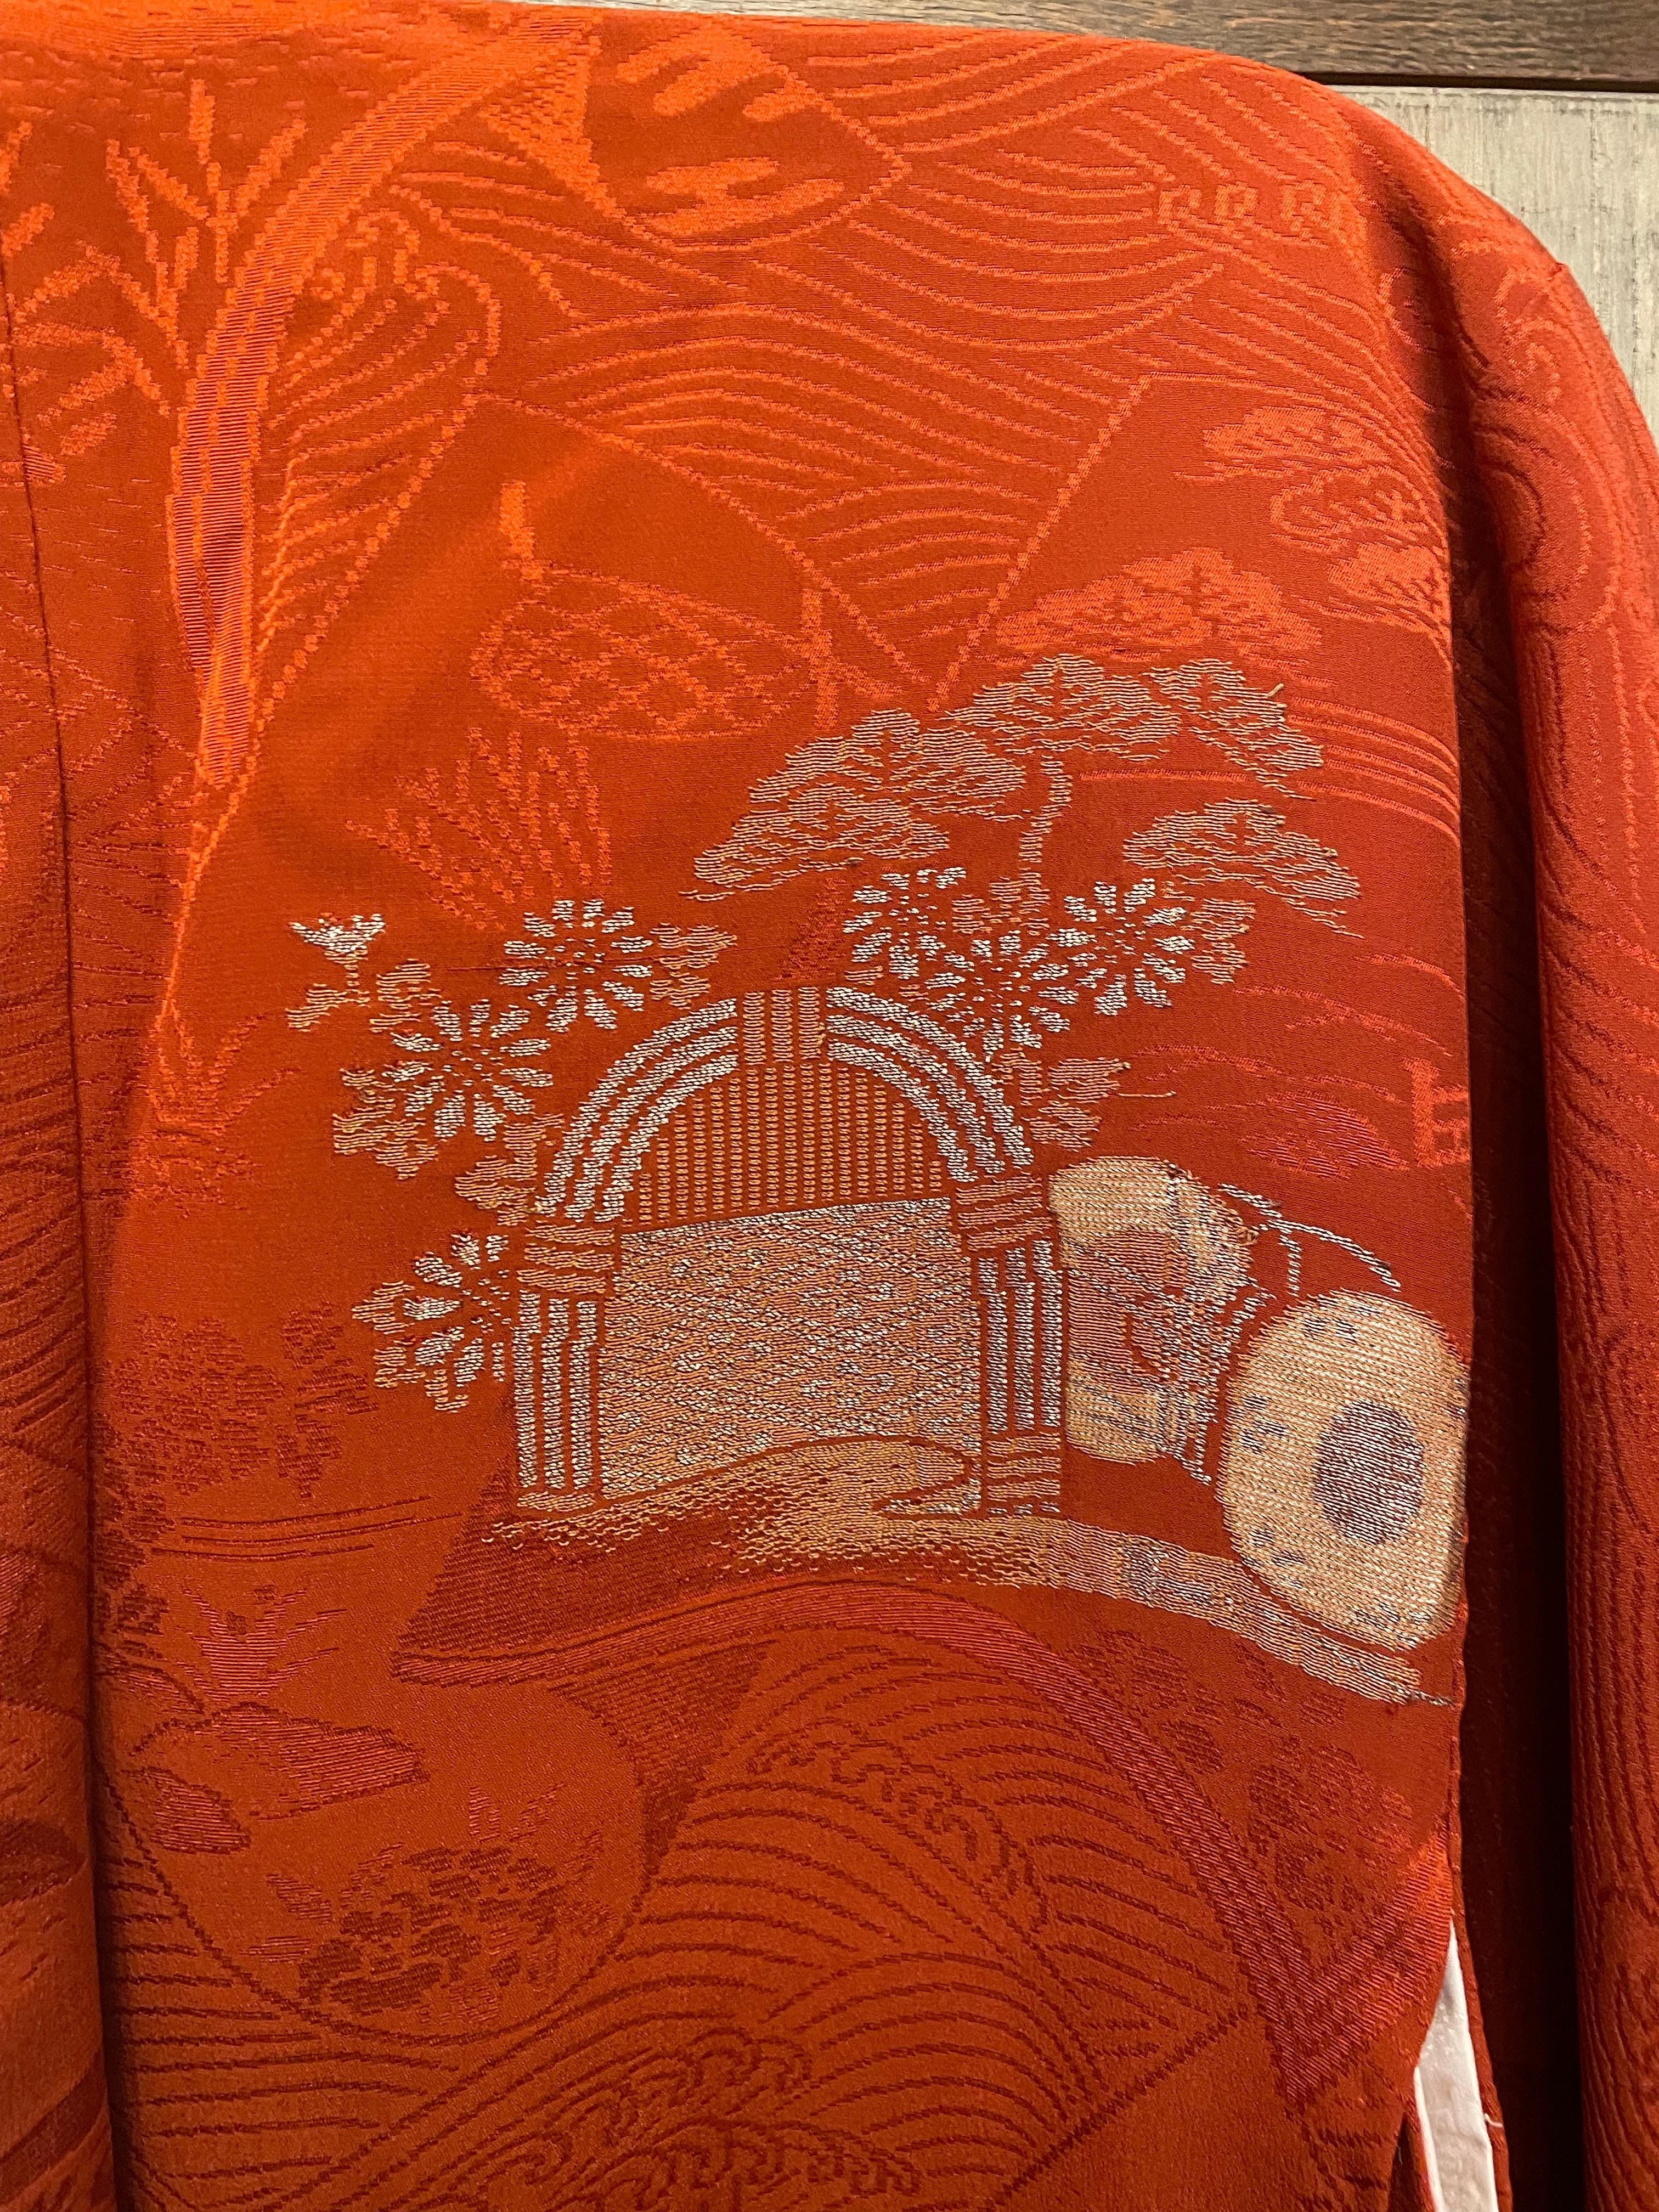 Dies ist eine Seidenjacke, die in Japan hergestellt wurde.
Es wurde in der Showa-Ära in den 1970er Jahren hergestellt.

Der Haori ist eine traditionelle japanische hüft- oder oberschenkellange Jacke, die über einem Kimono getragen wird. Der Haori